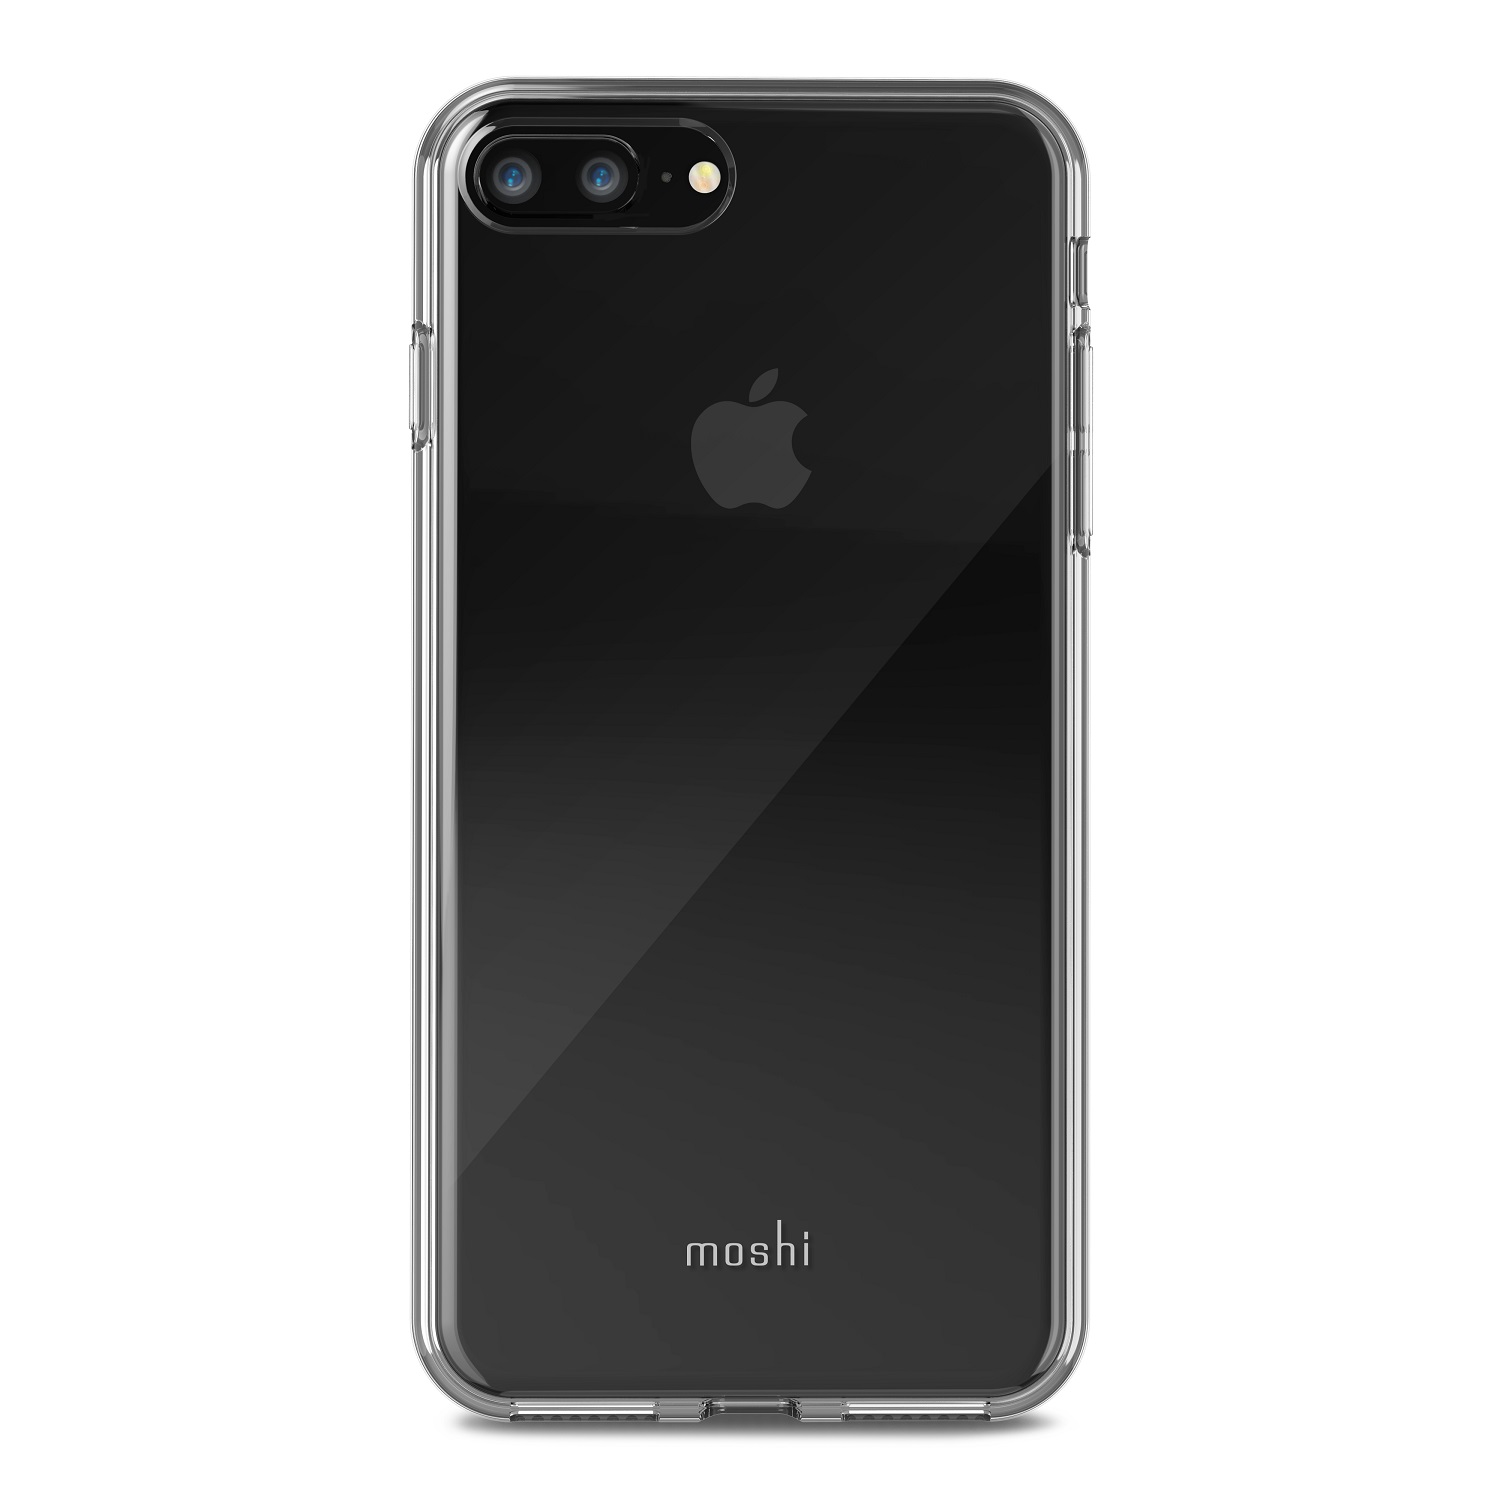 Moshi Vitros Case for iPhone 8 Plus/7 Plus